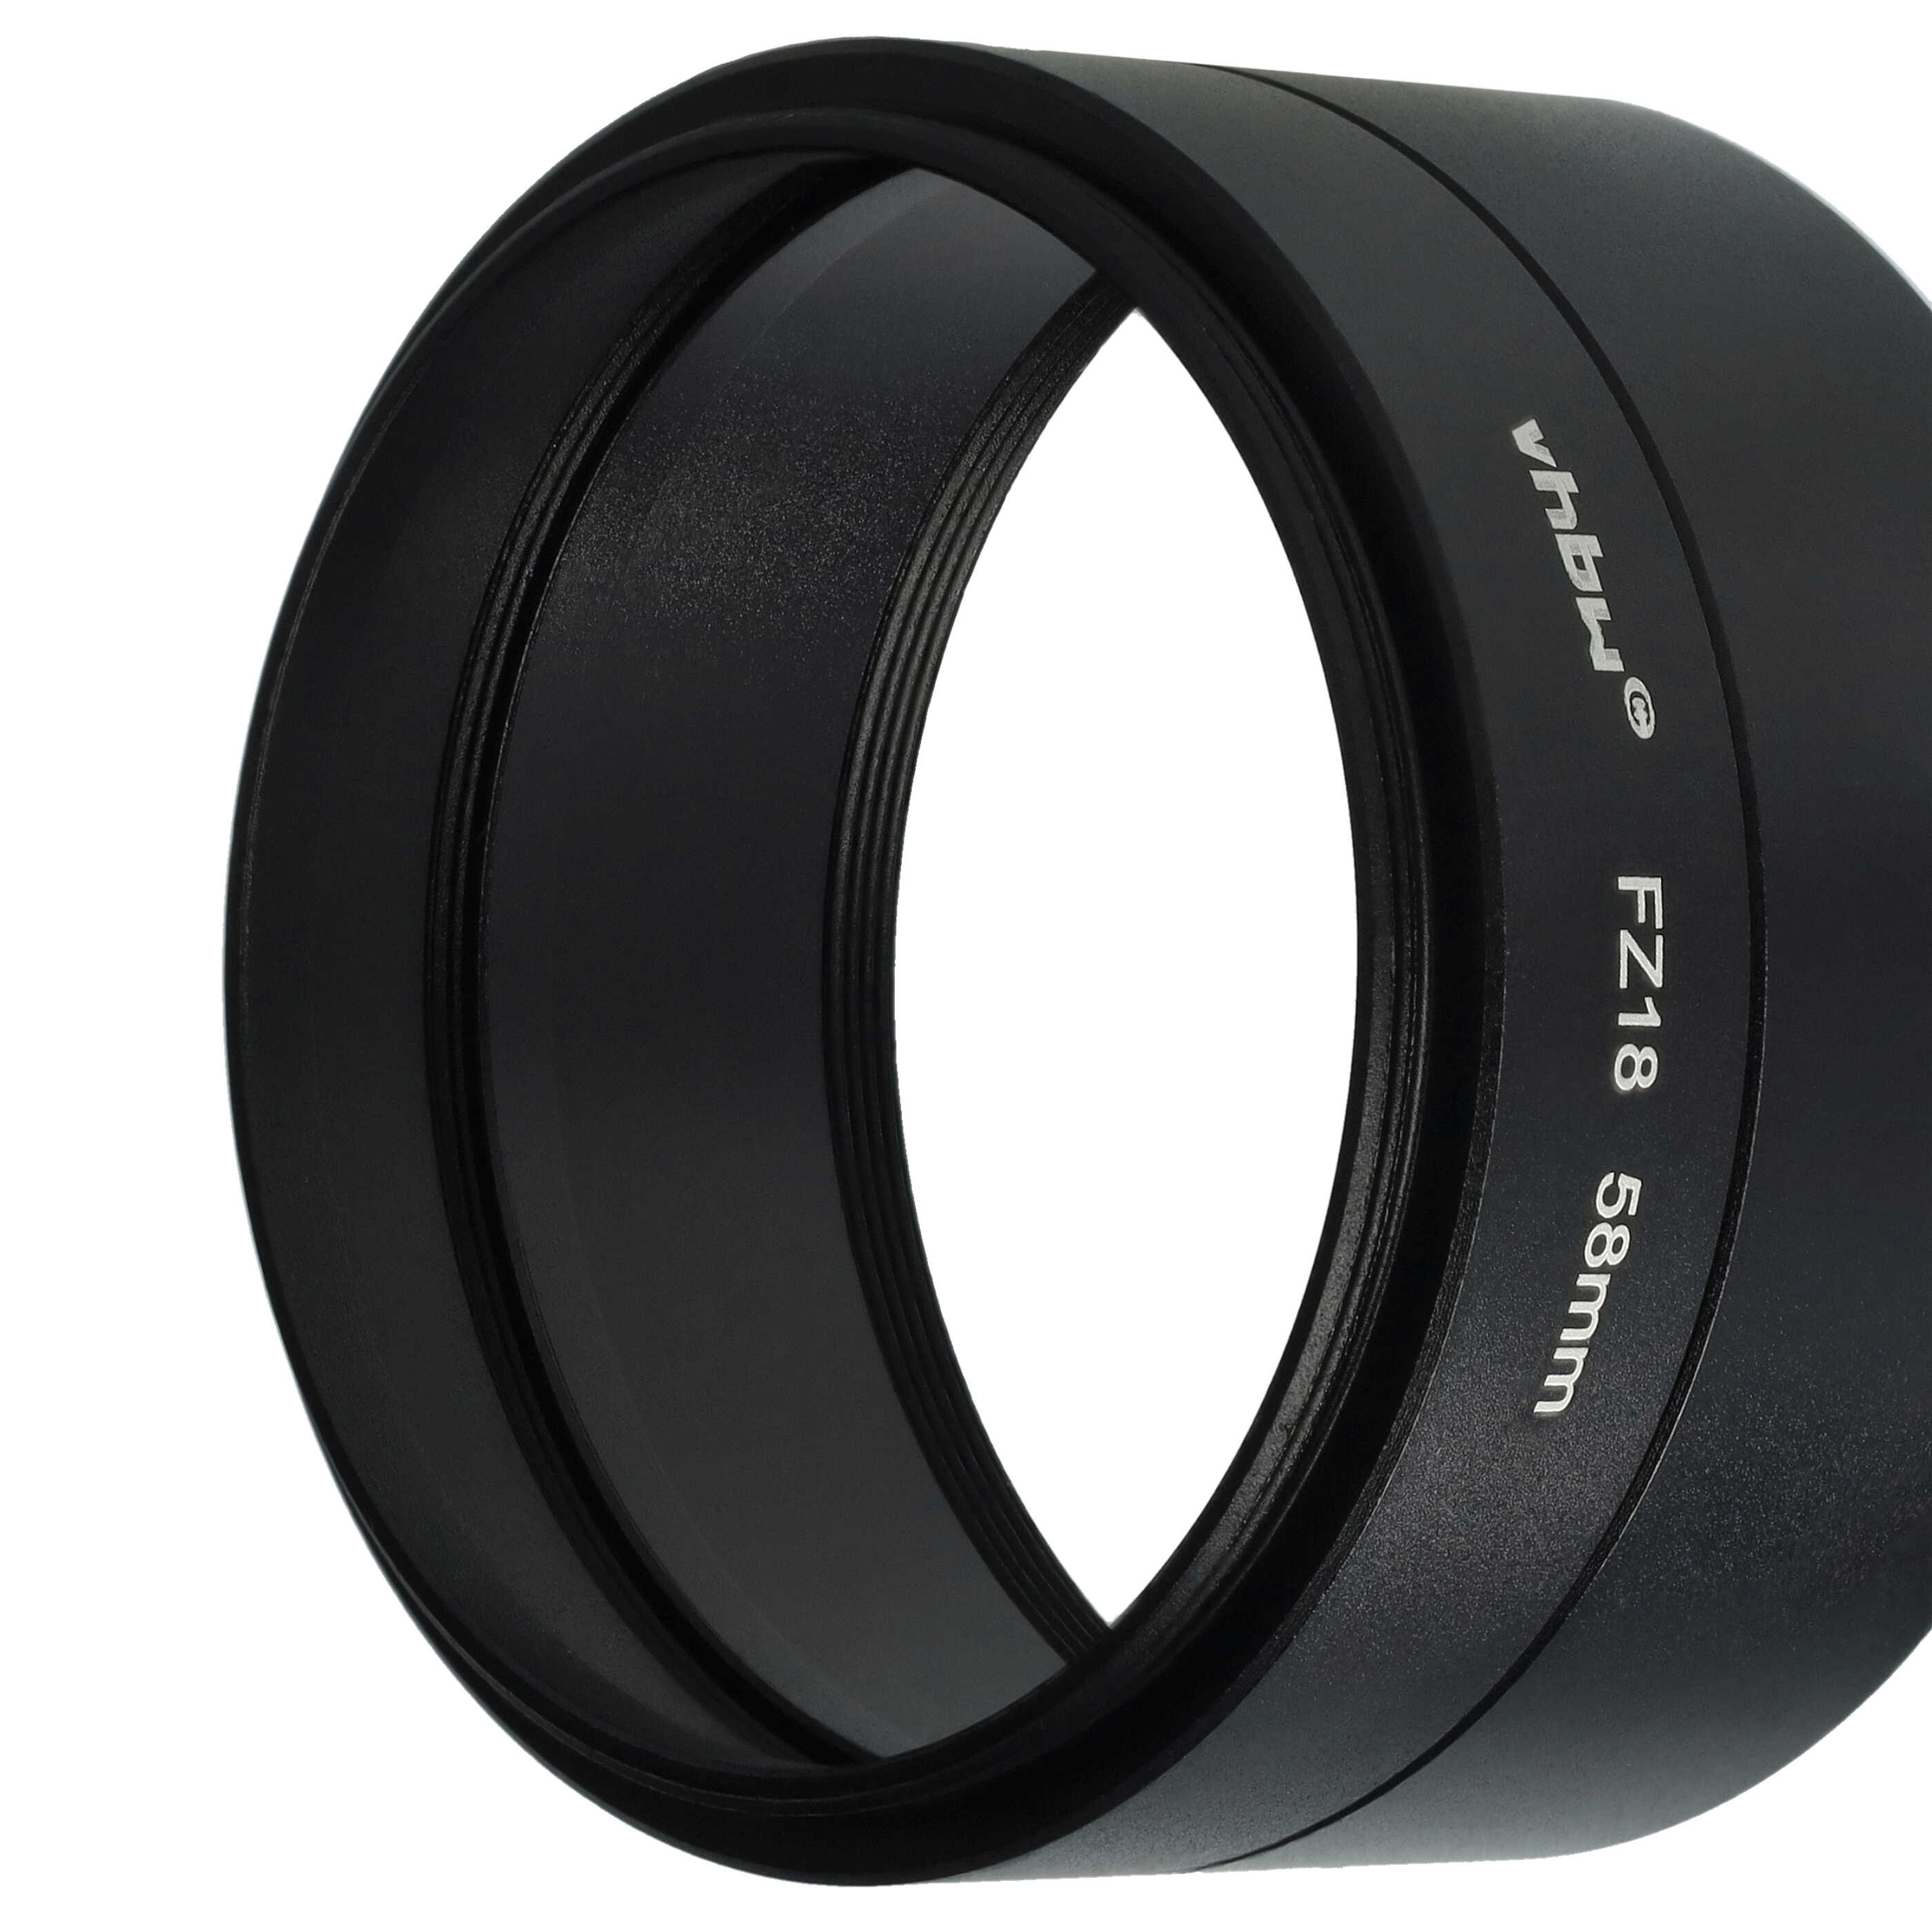 Adattatore filtro 58 mm tubolare per obbiettivo fotocamera compatibile con Panasonic Lumix DMC-FZ18